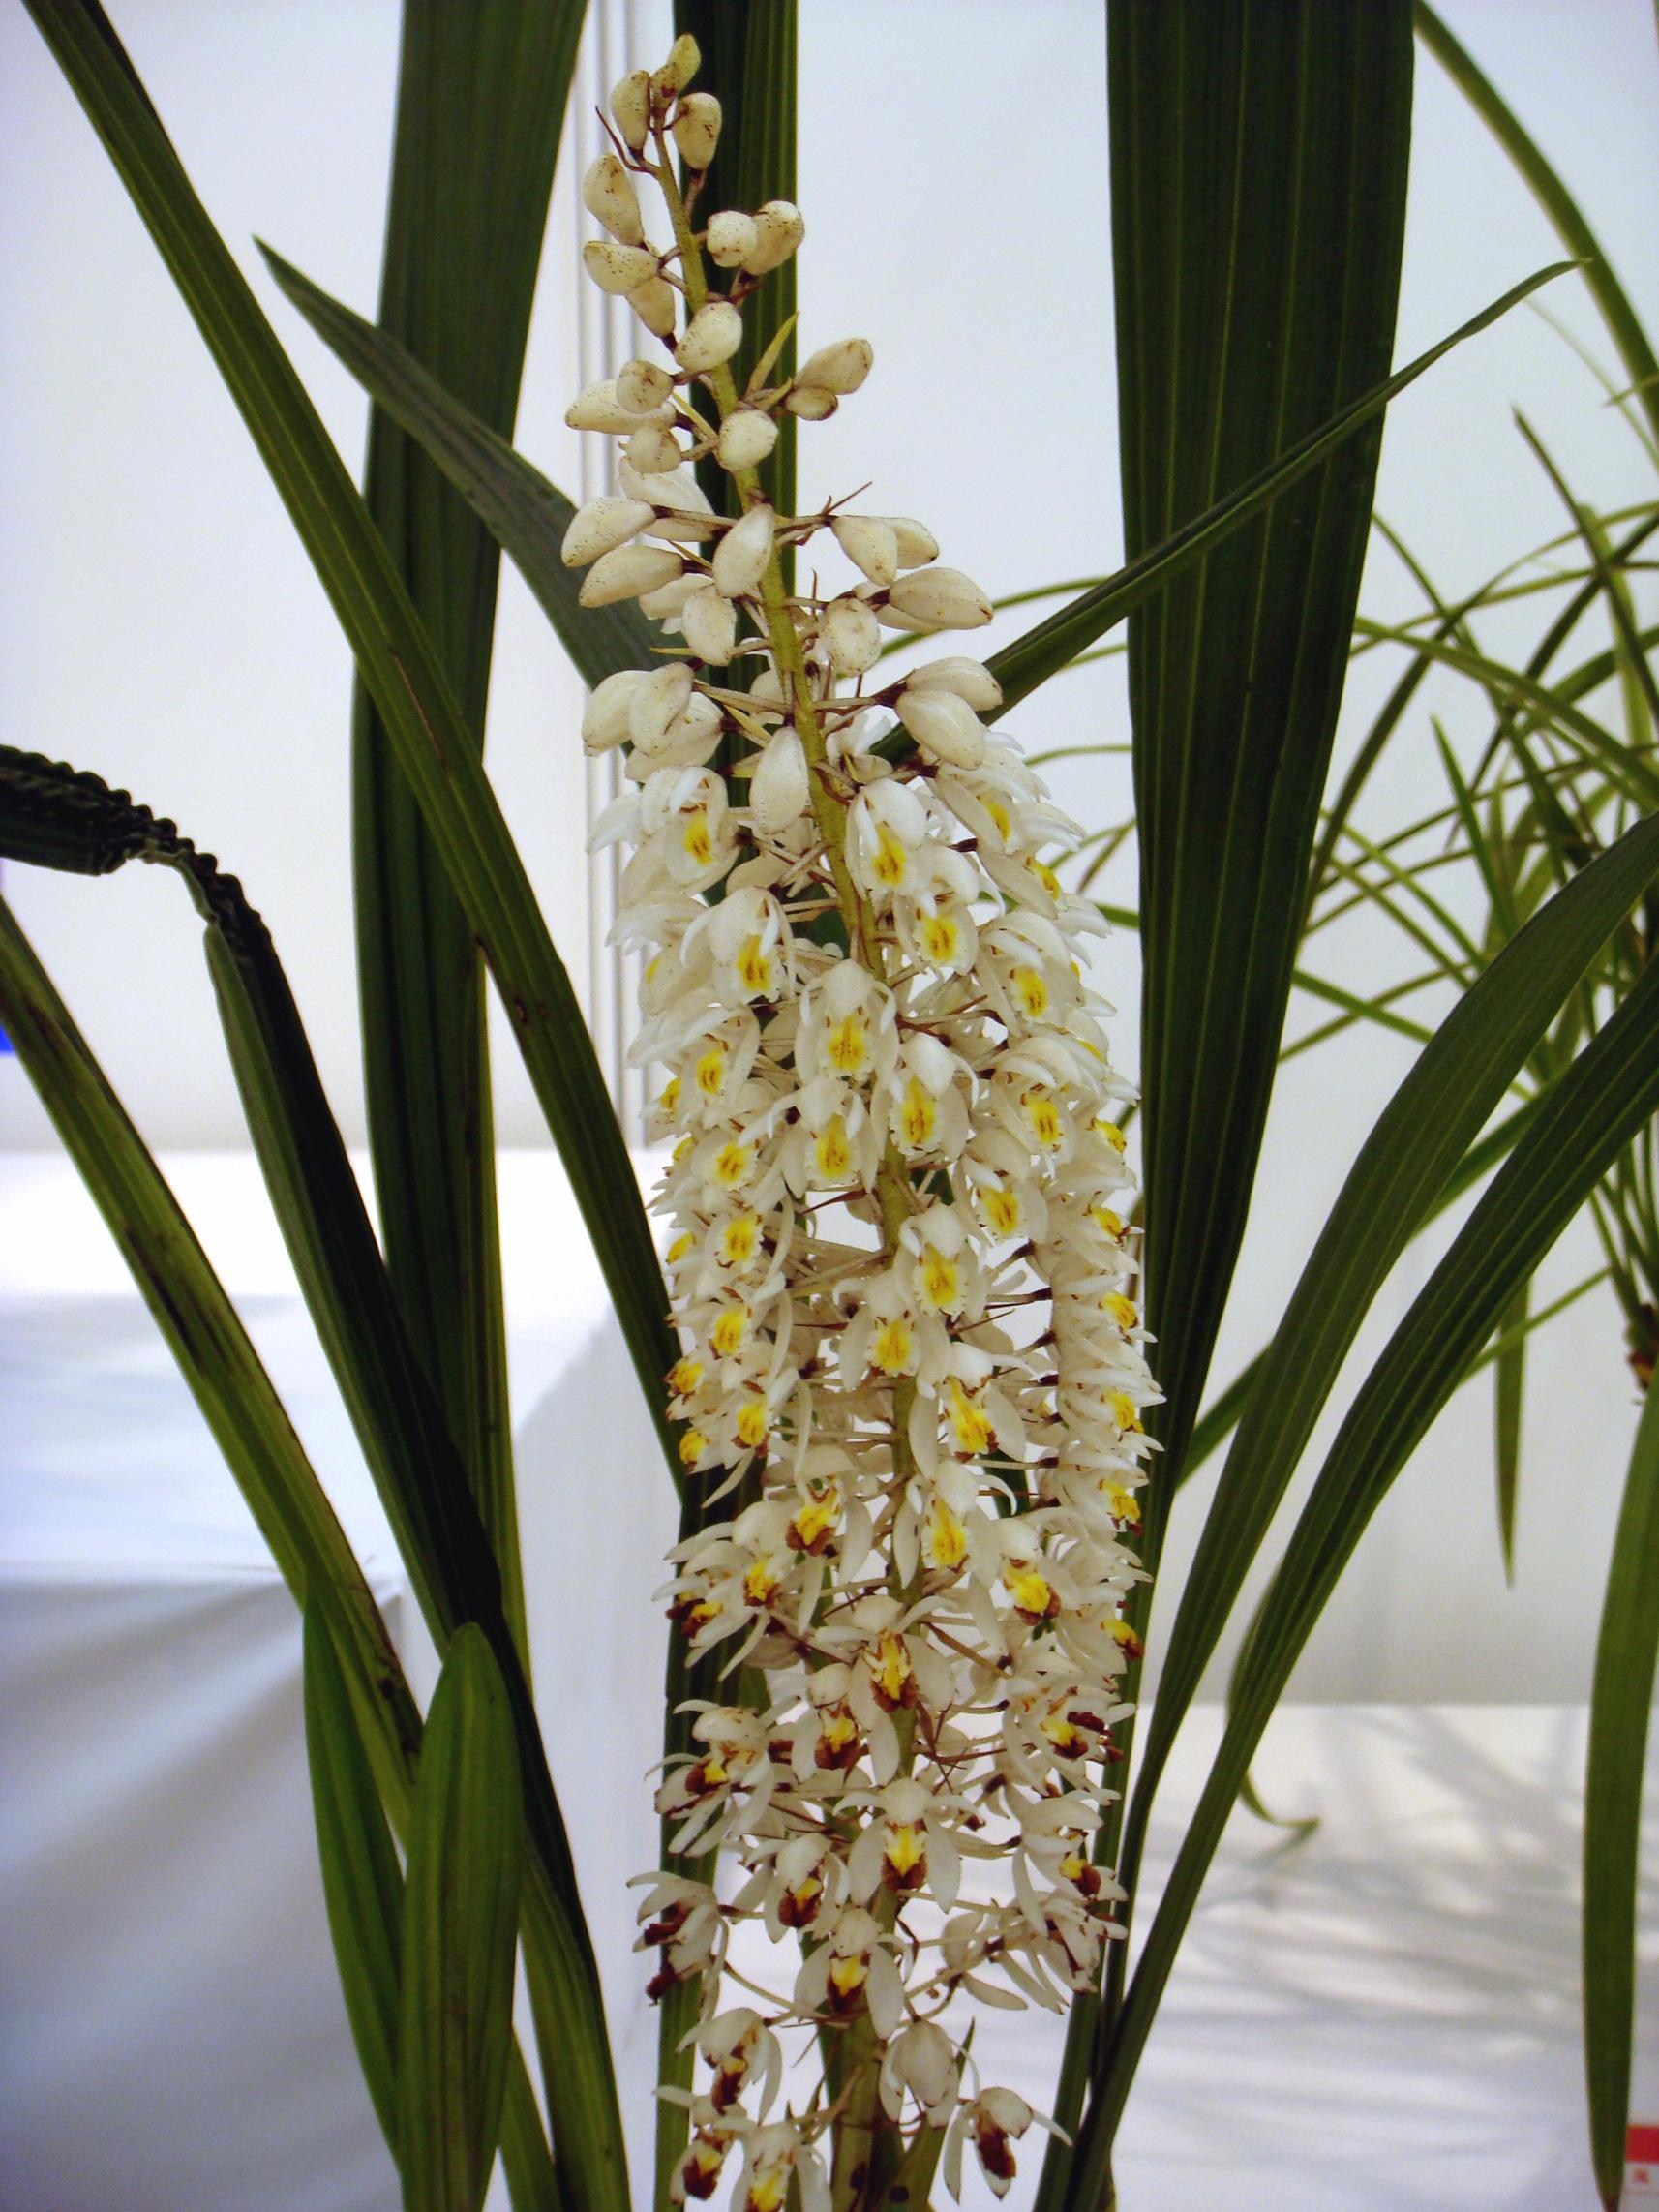 http://orchids.la.coocan.jp/Coelogyne/Coelogyne%20multiflora/DSC05172.JPG